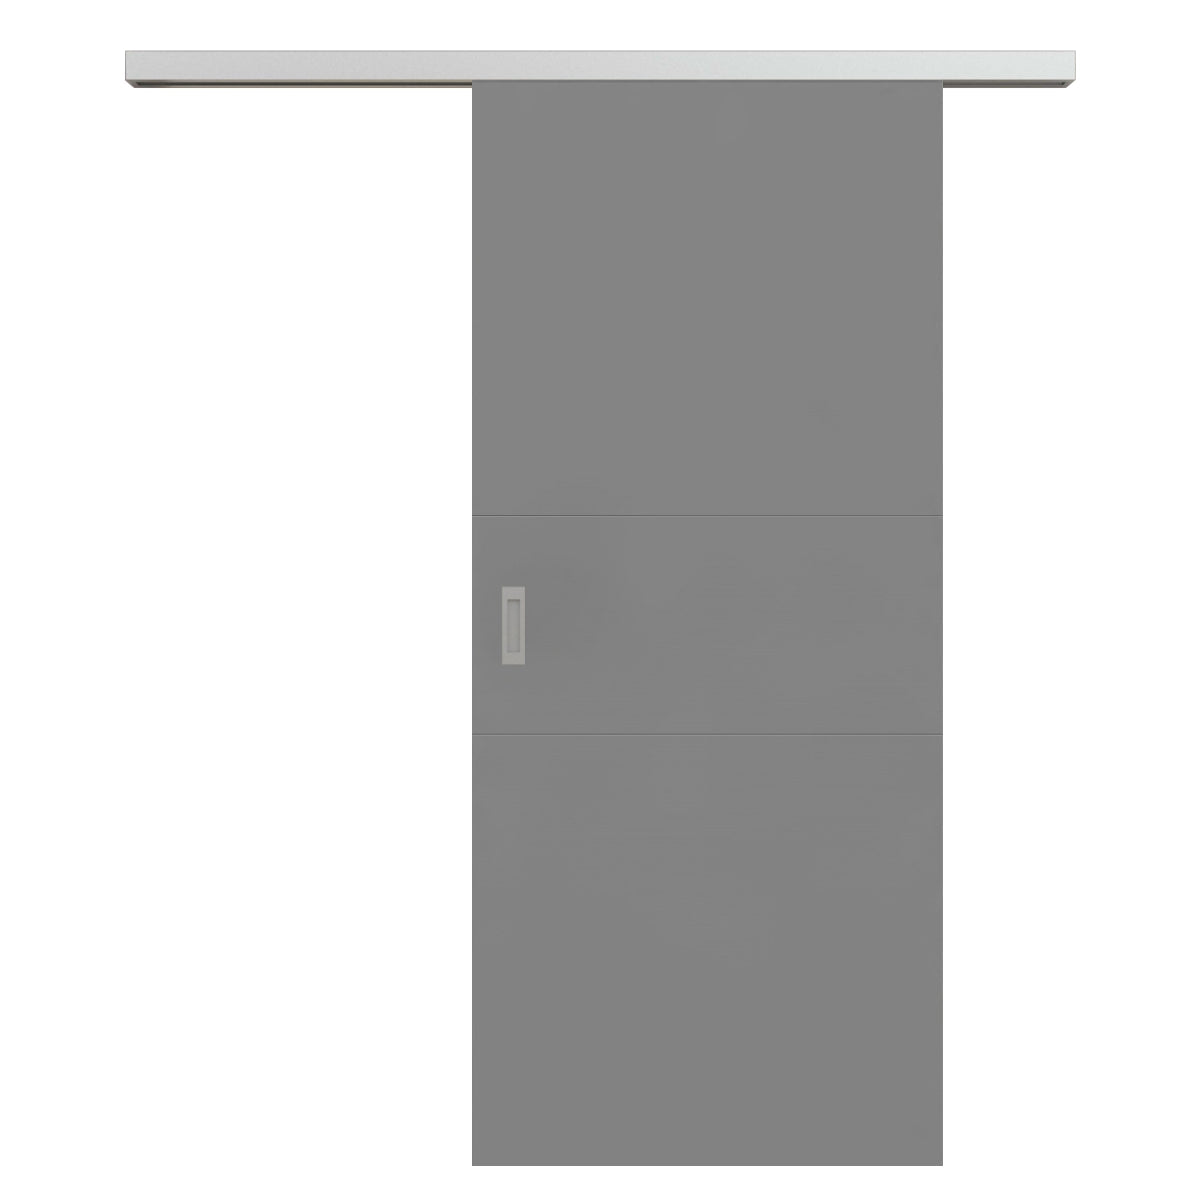 Schiebetür für Set mit Edelstahllaufkasten grau 2 Rillen quer - Modell Designtür Q27